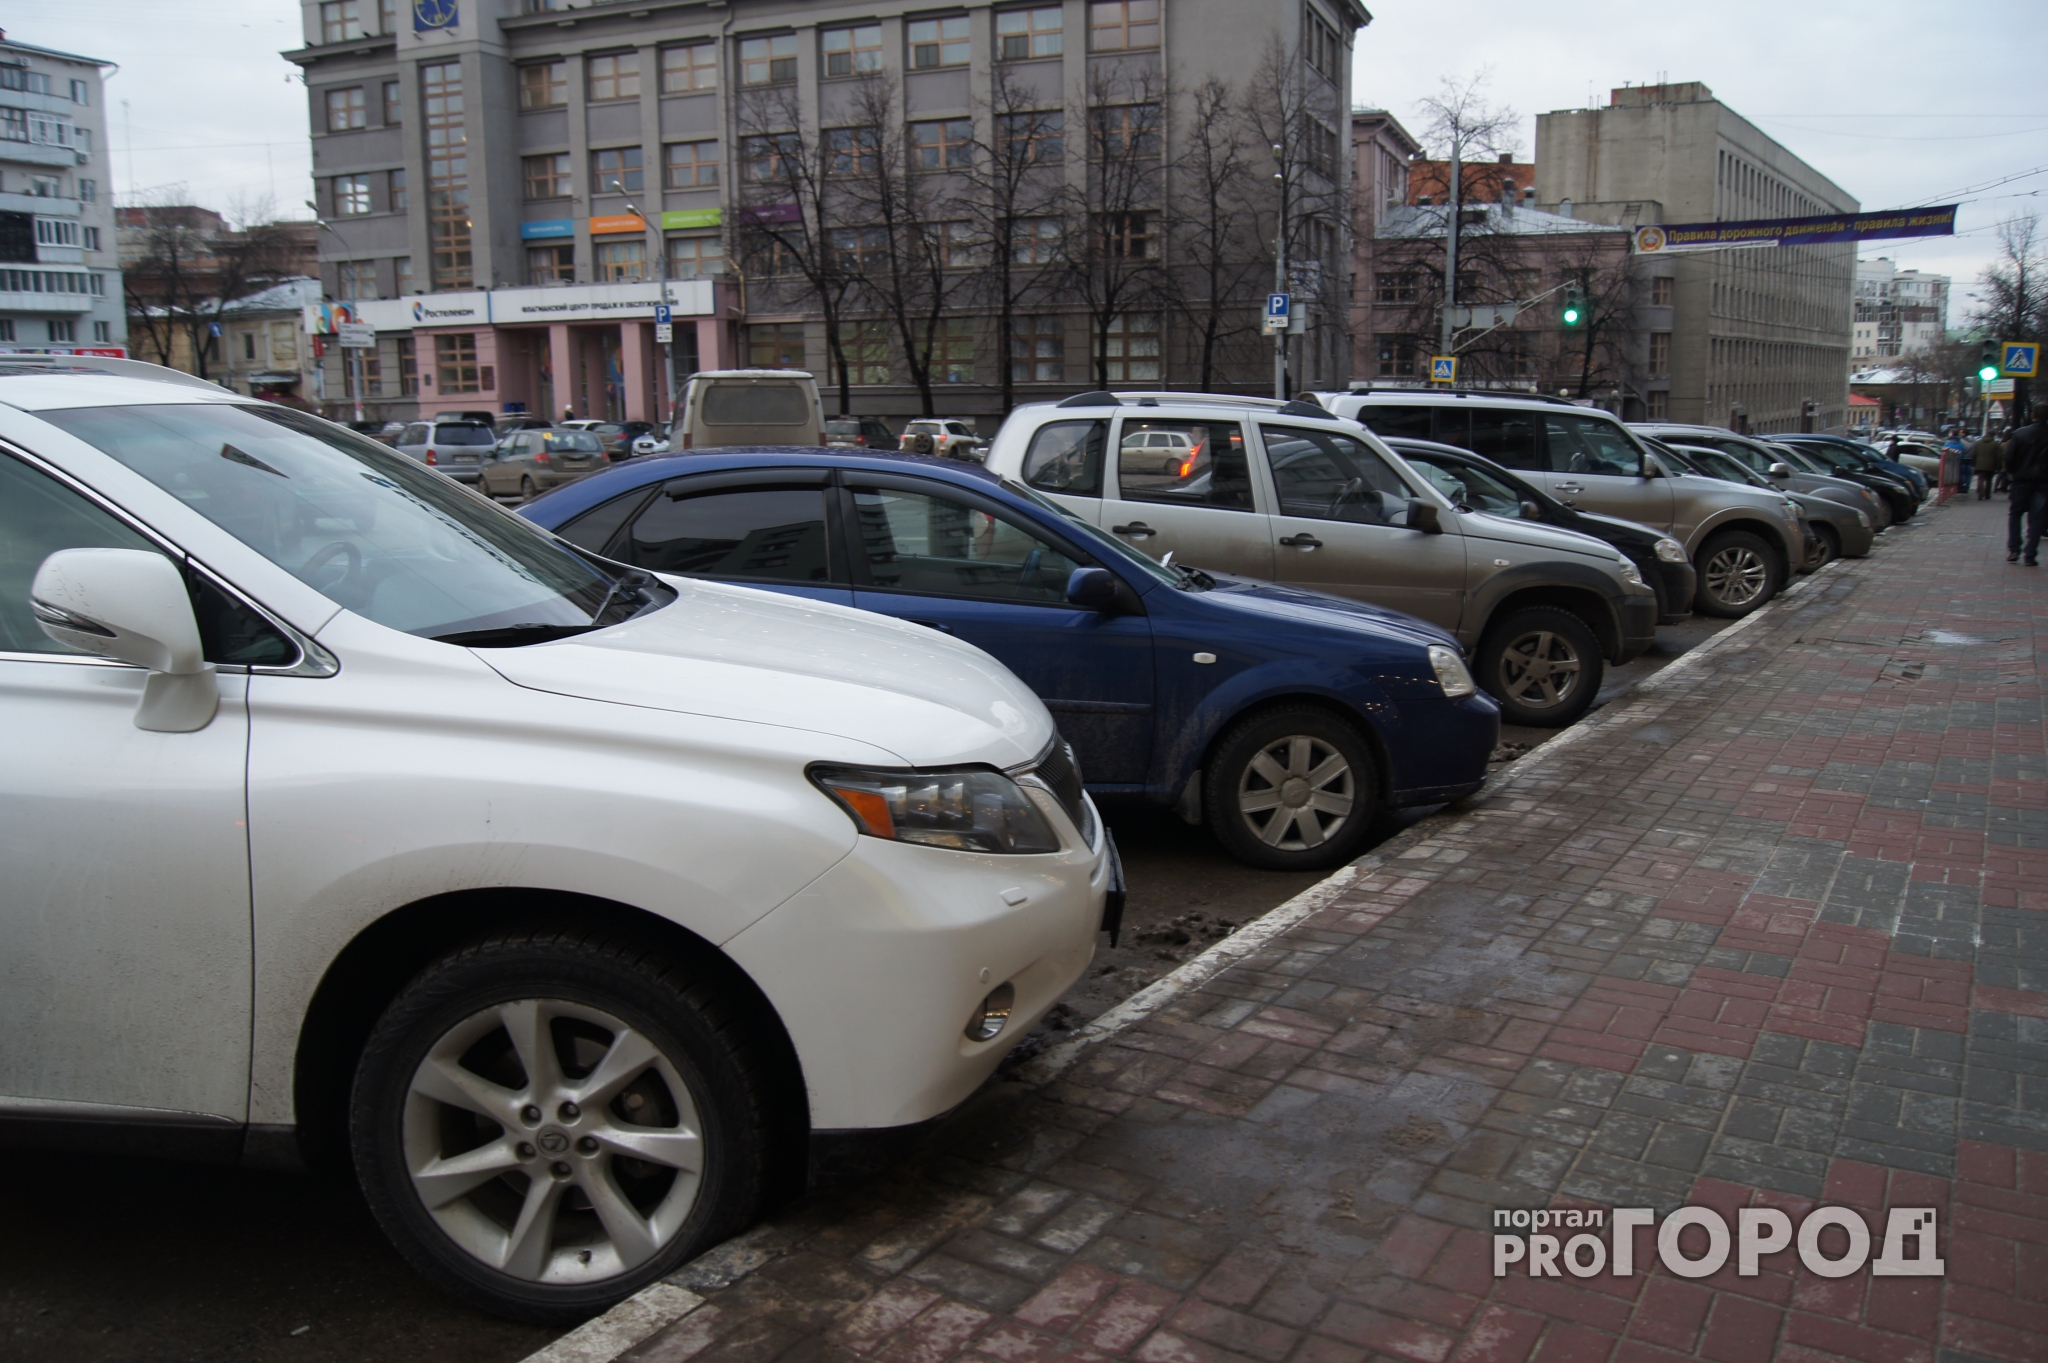 Топ самых популярных цветов автомобилей в Нижегородской области